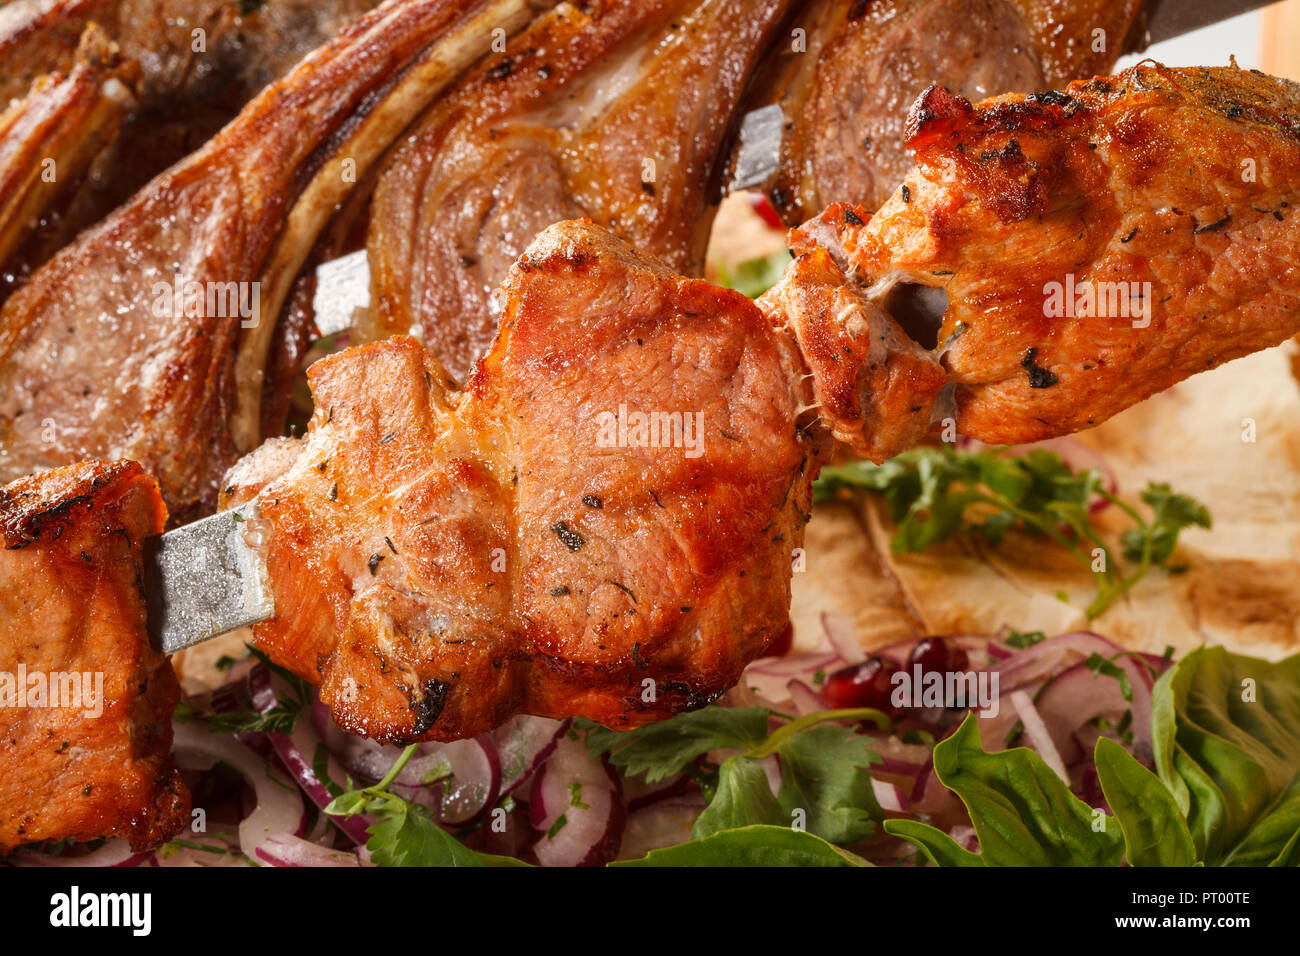 Khorovats- Kebab arménien traditionnel / plateau de brochettes sur bois. Brochettes de veau, d'agneau, de porc et de poulet servies sur du pain plat. Banque D'Images